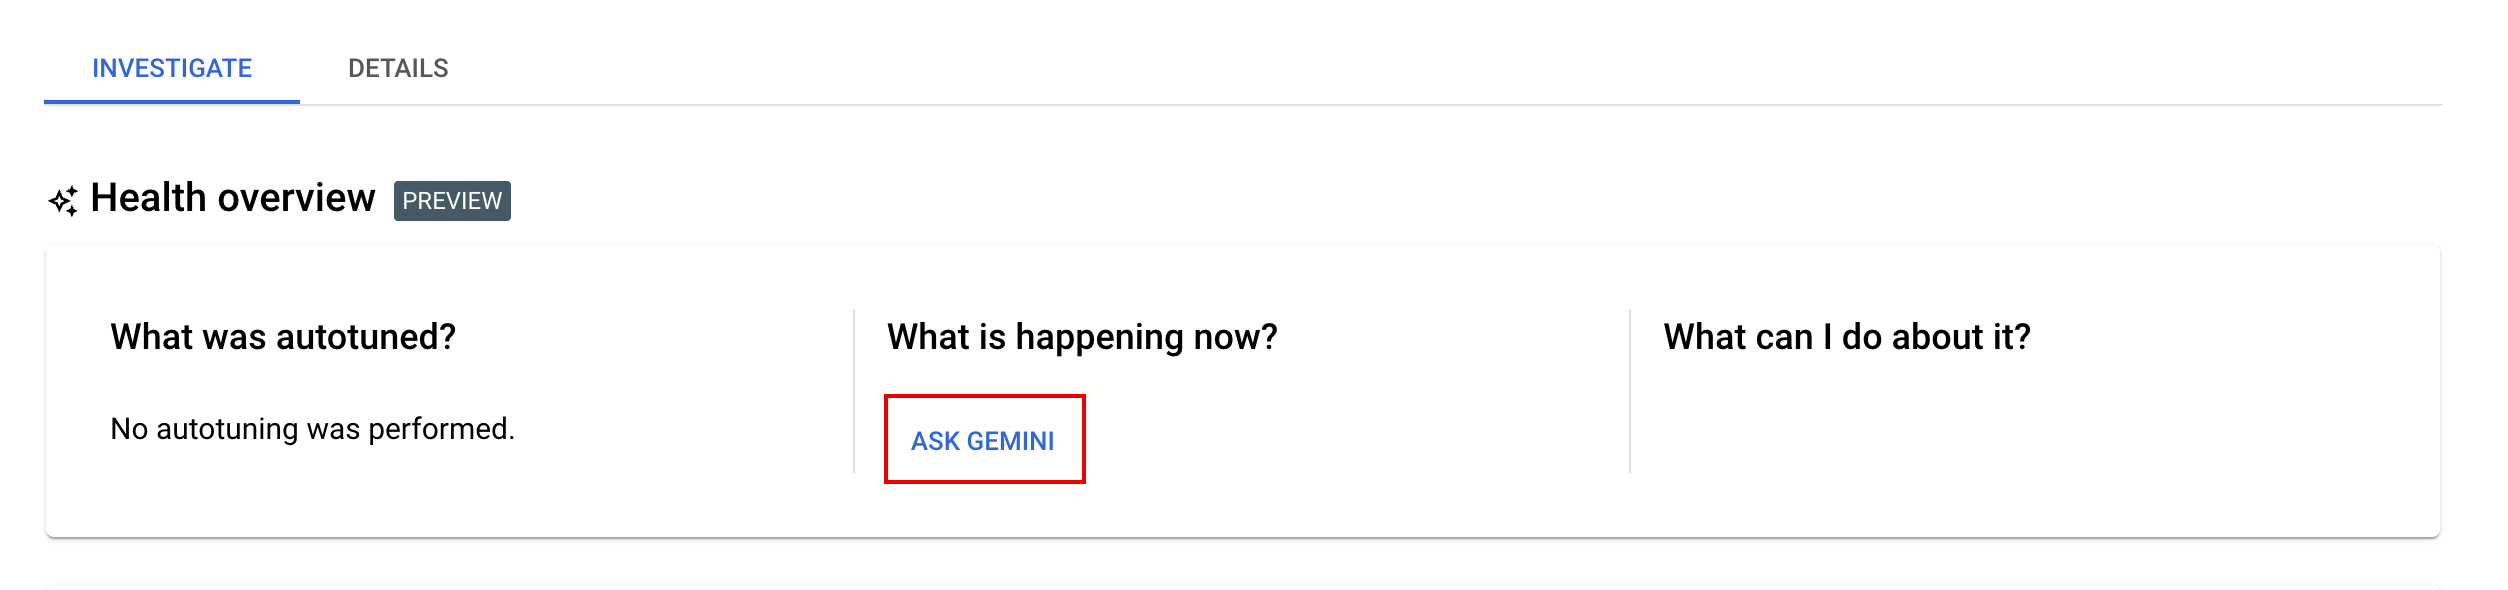 “向 Gemini 提问”按钮。